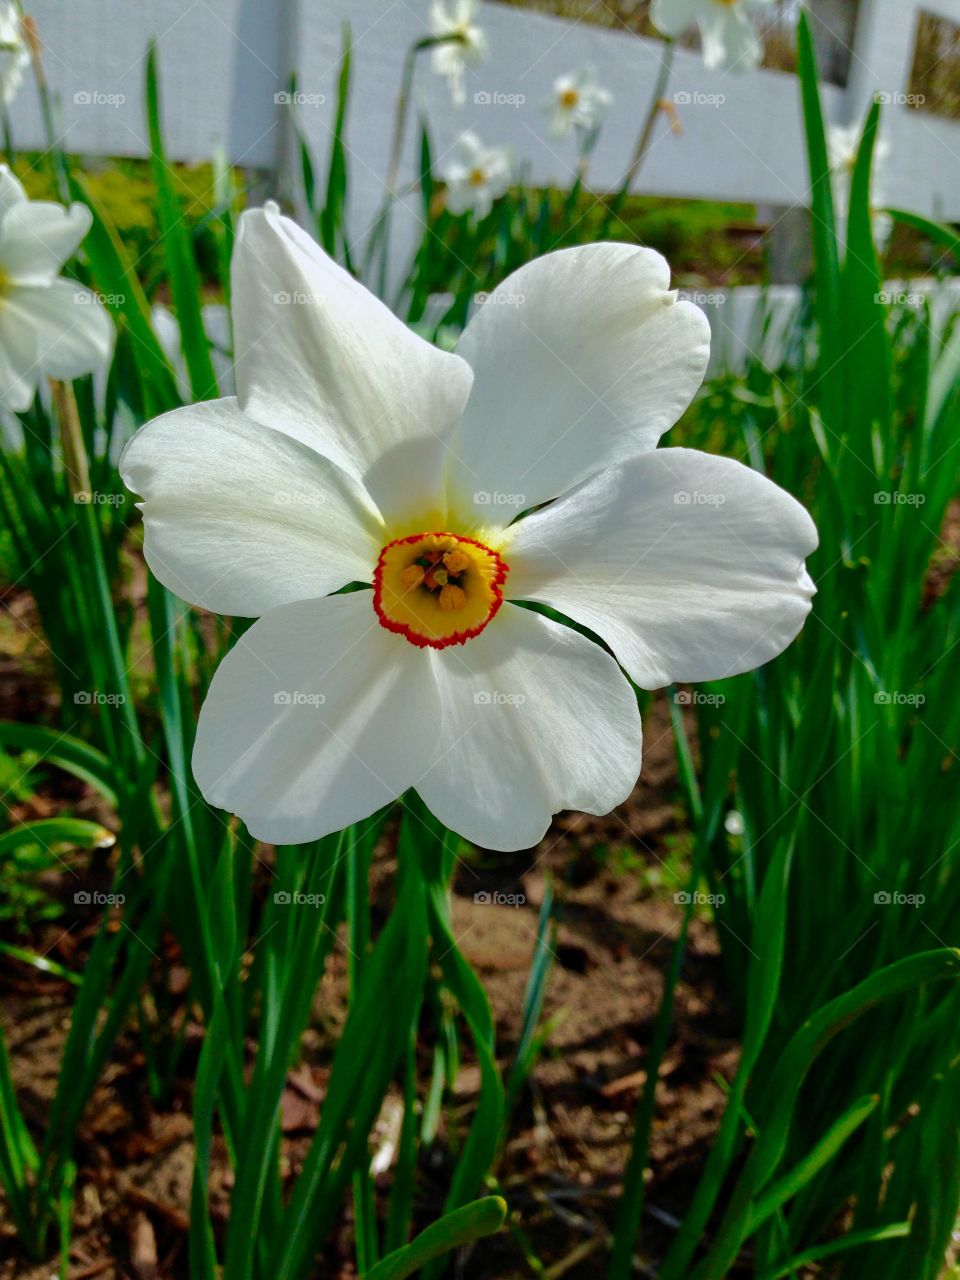 White flower in garden 